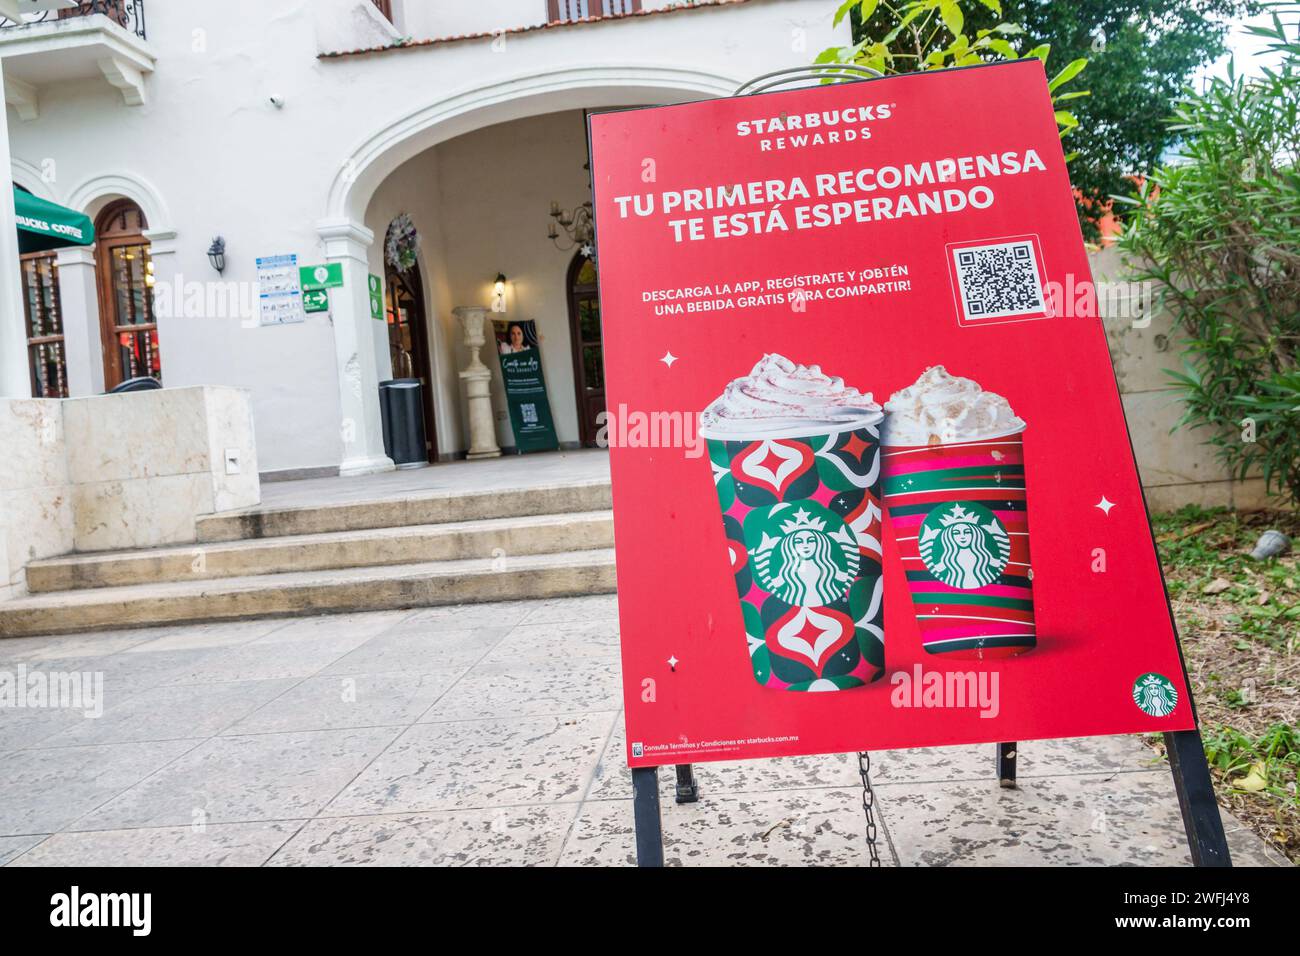 Mérida México, Zona Paseo Montejo Centro, Starbucks Café café, entrada frontal, cartel publicitario promoción, programa de recompensas APP, código QR, exterior Foto de stock